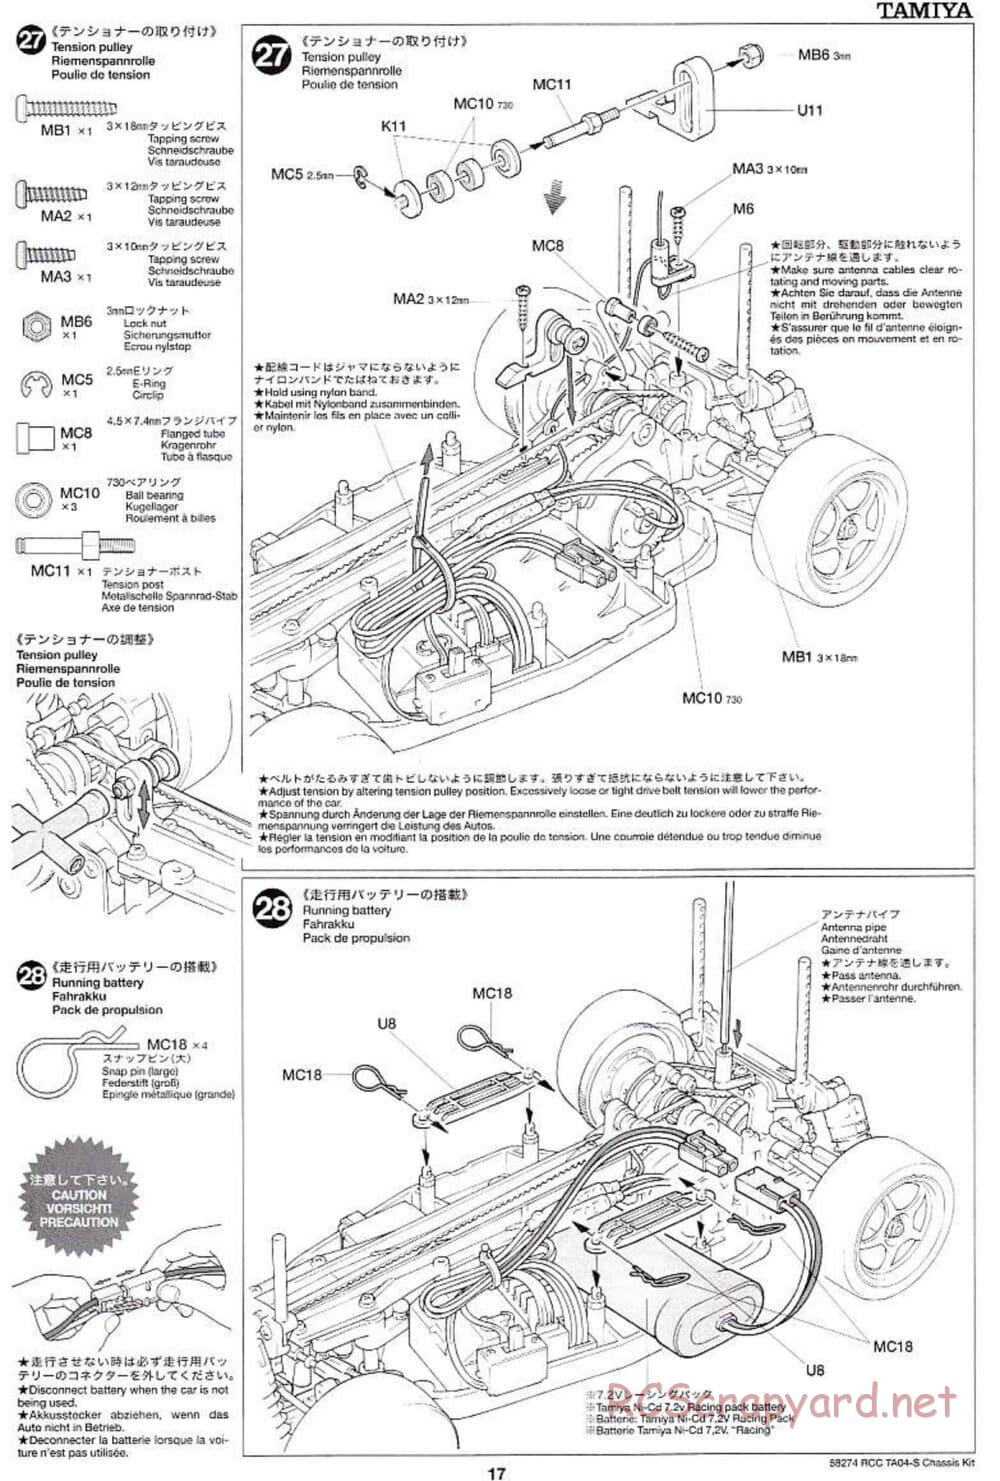 Tamiya - TA-04S Chassis - Manual - Page 17